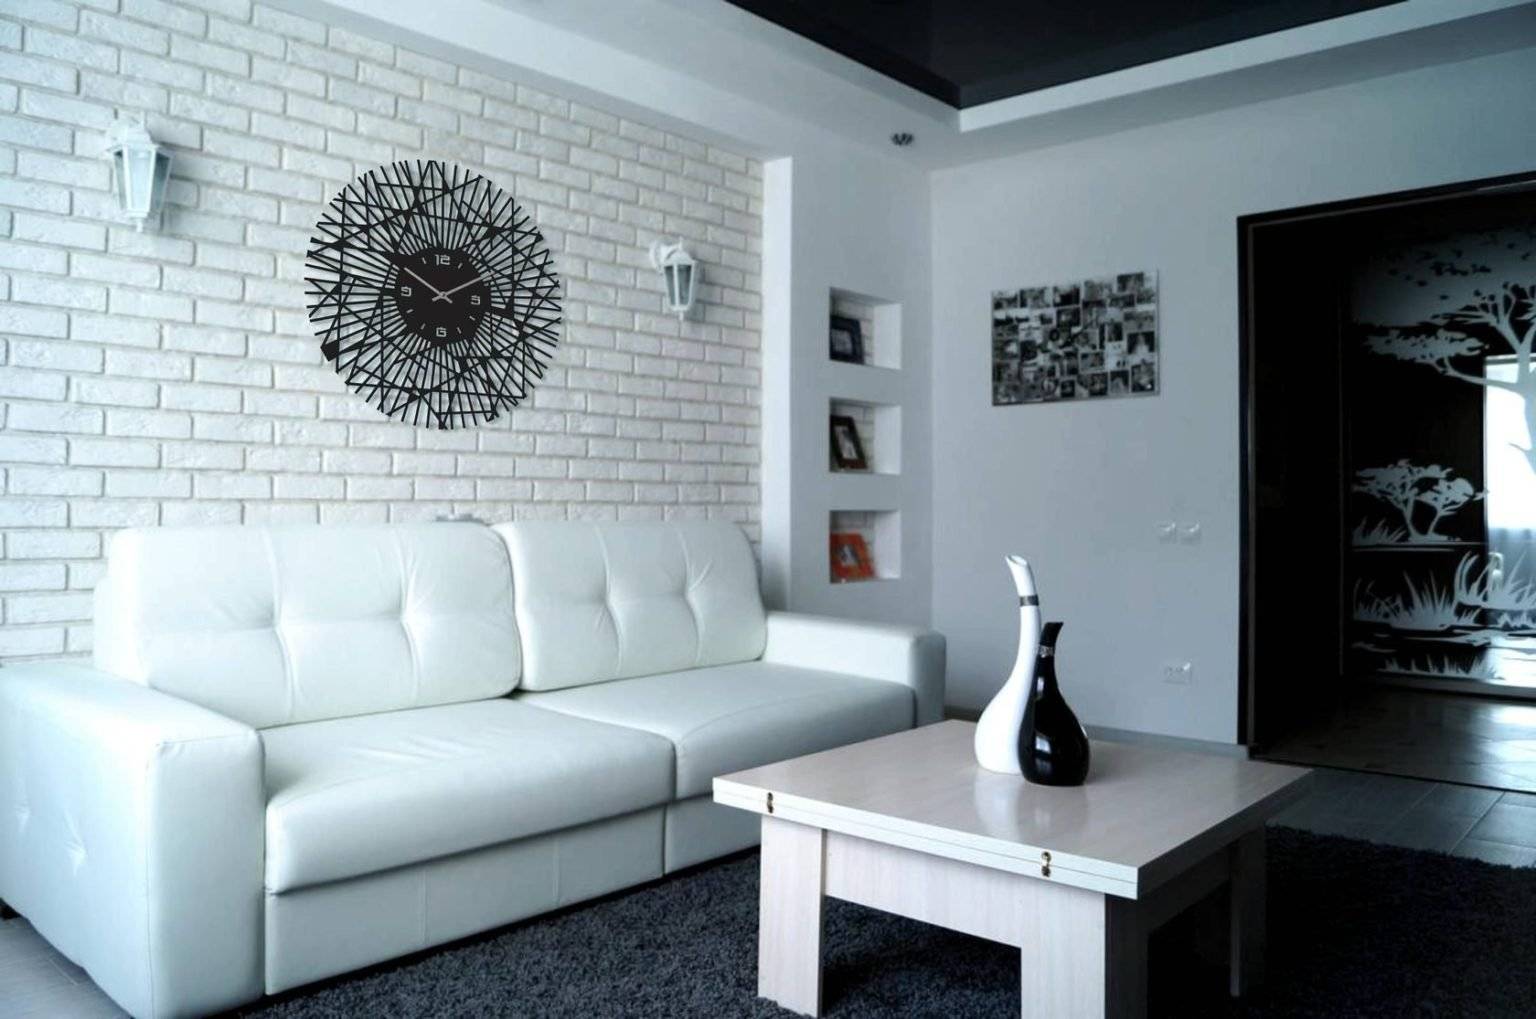 Кирпич в интерьере гостиной: настоящий материал и его имитации в дизайне